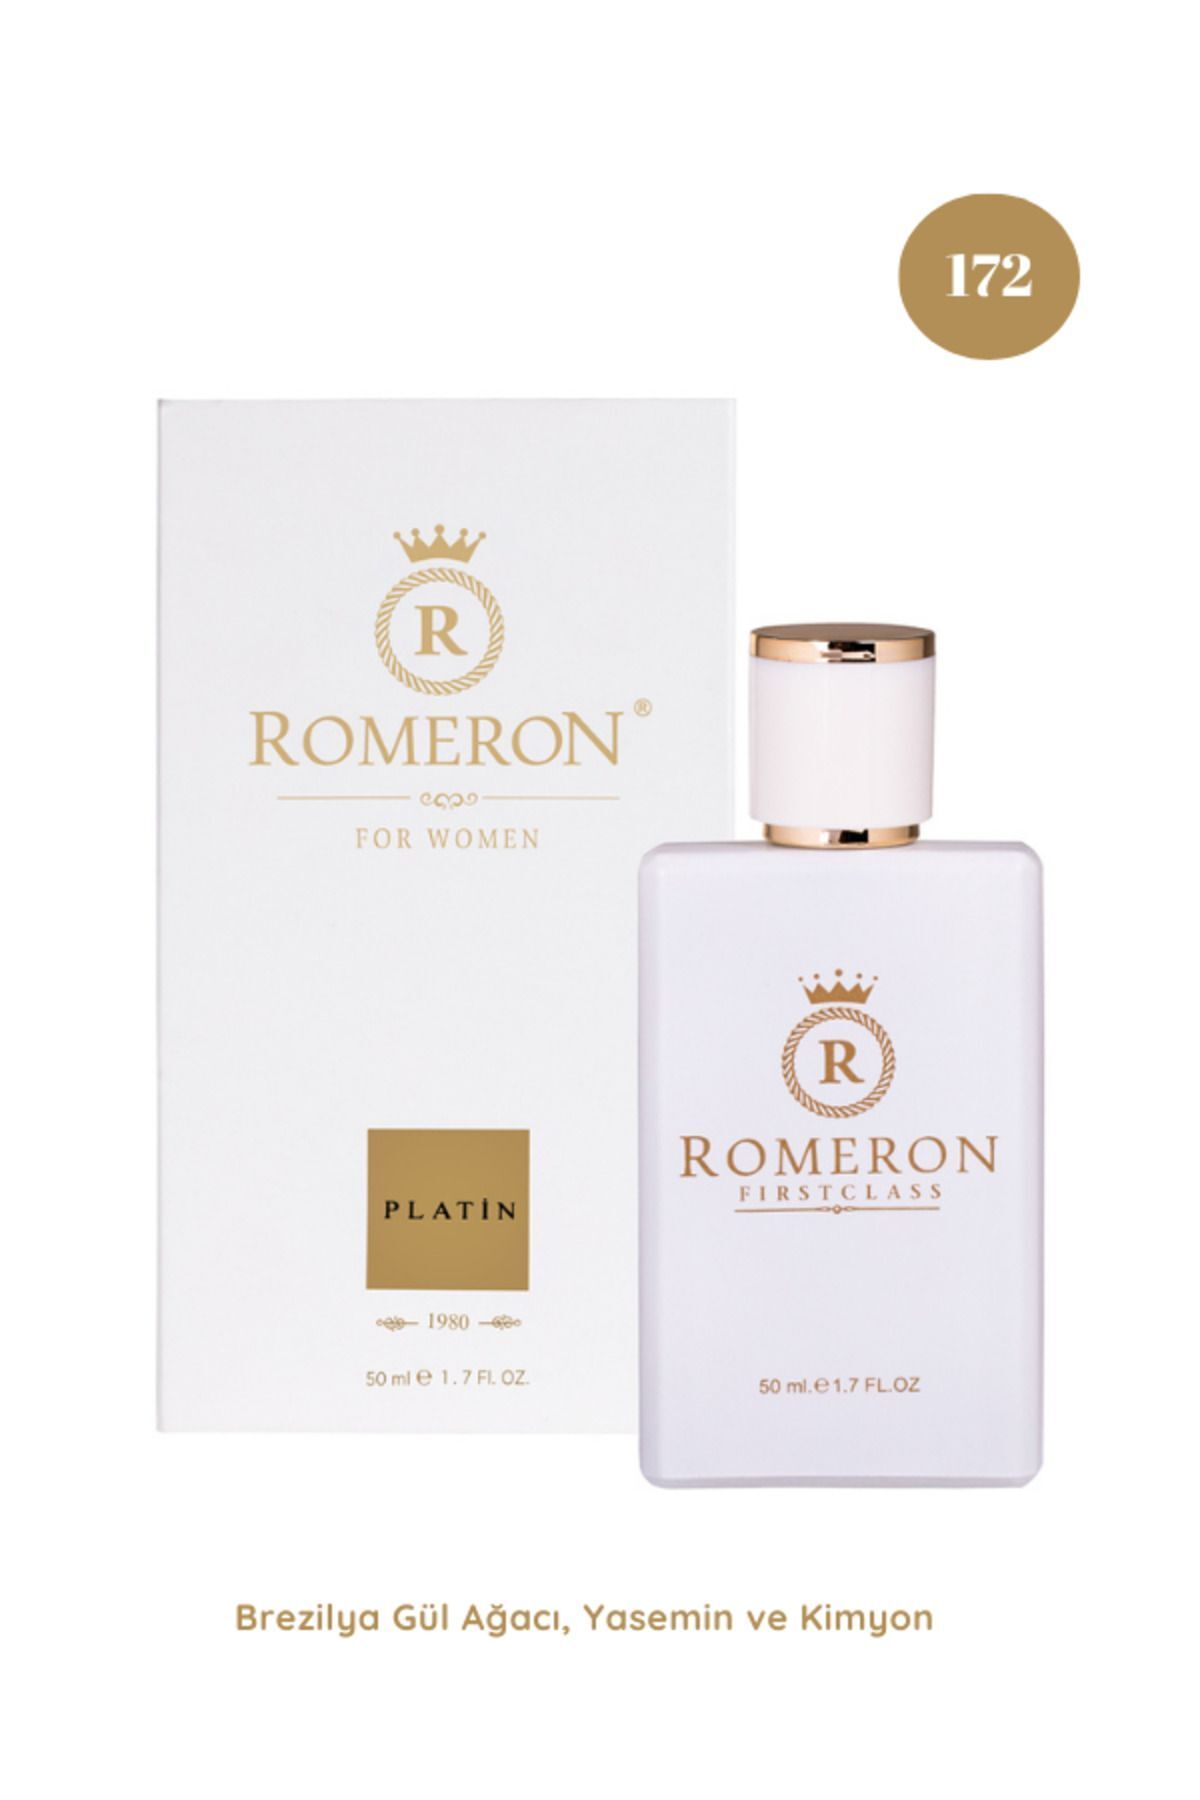 ROMERON 172 Platin Kadın Parfüm EDP 50ml